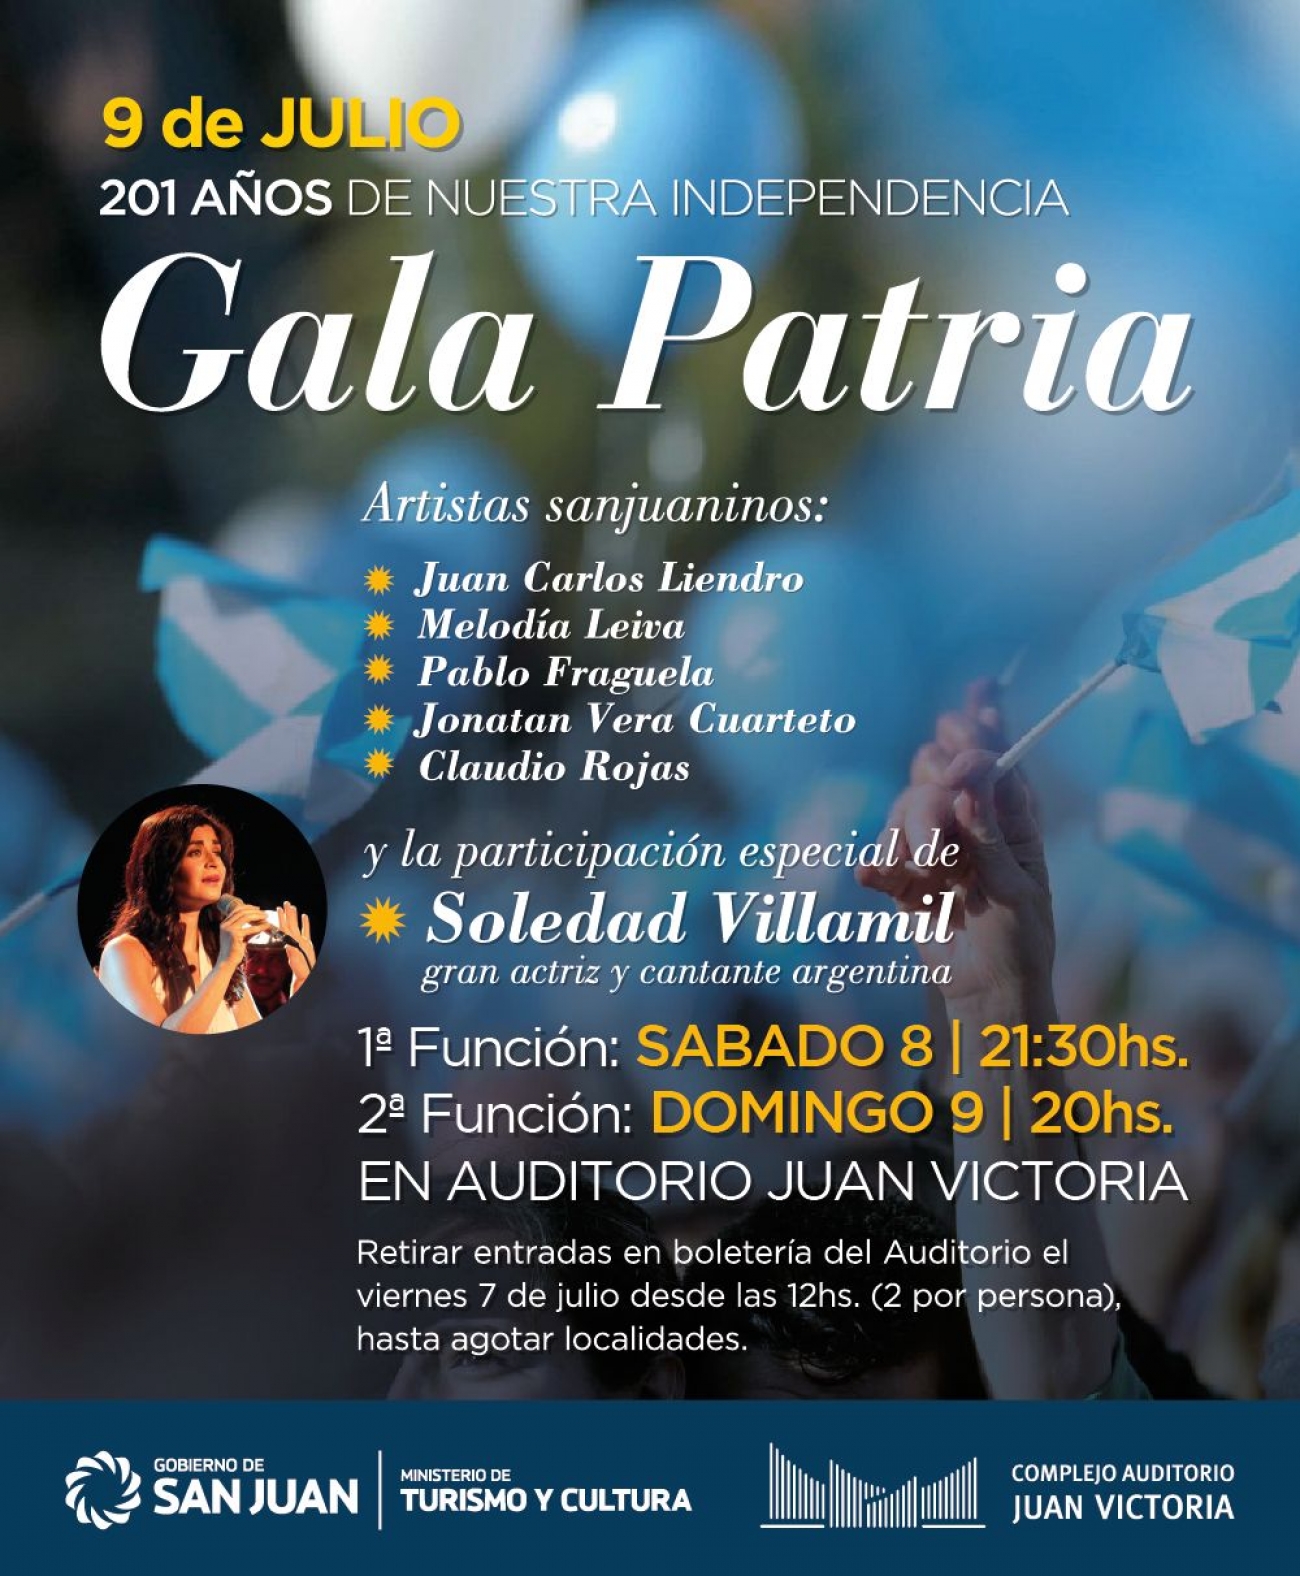 Gobierno De San Juan Los 201 Anos De La Independencia Se Celebran Con Tango Y Folclore gobierno de san juan